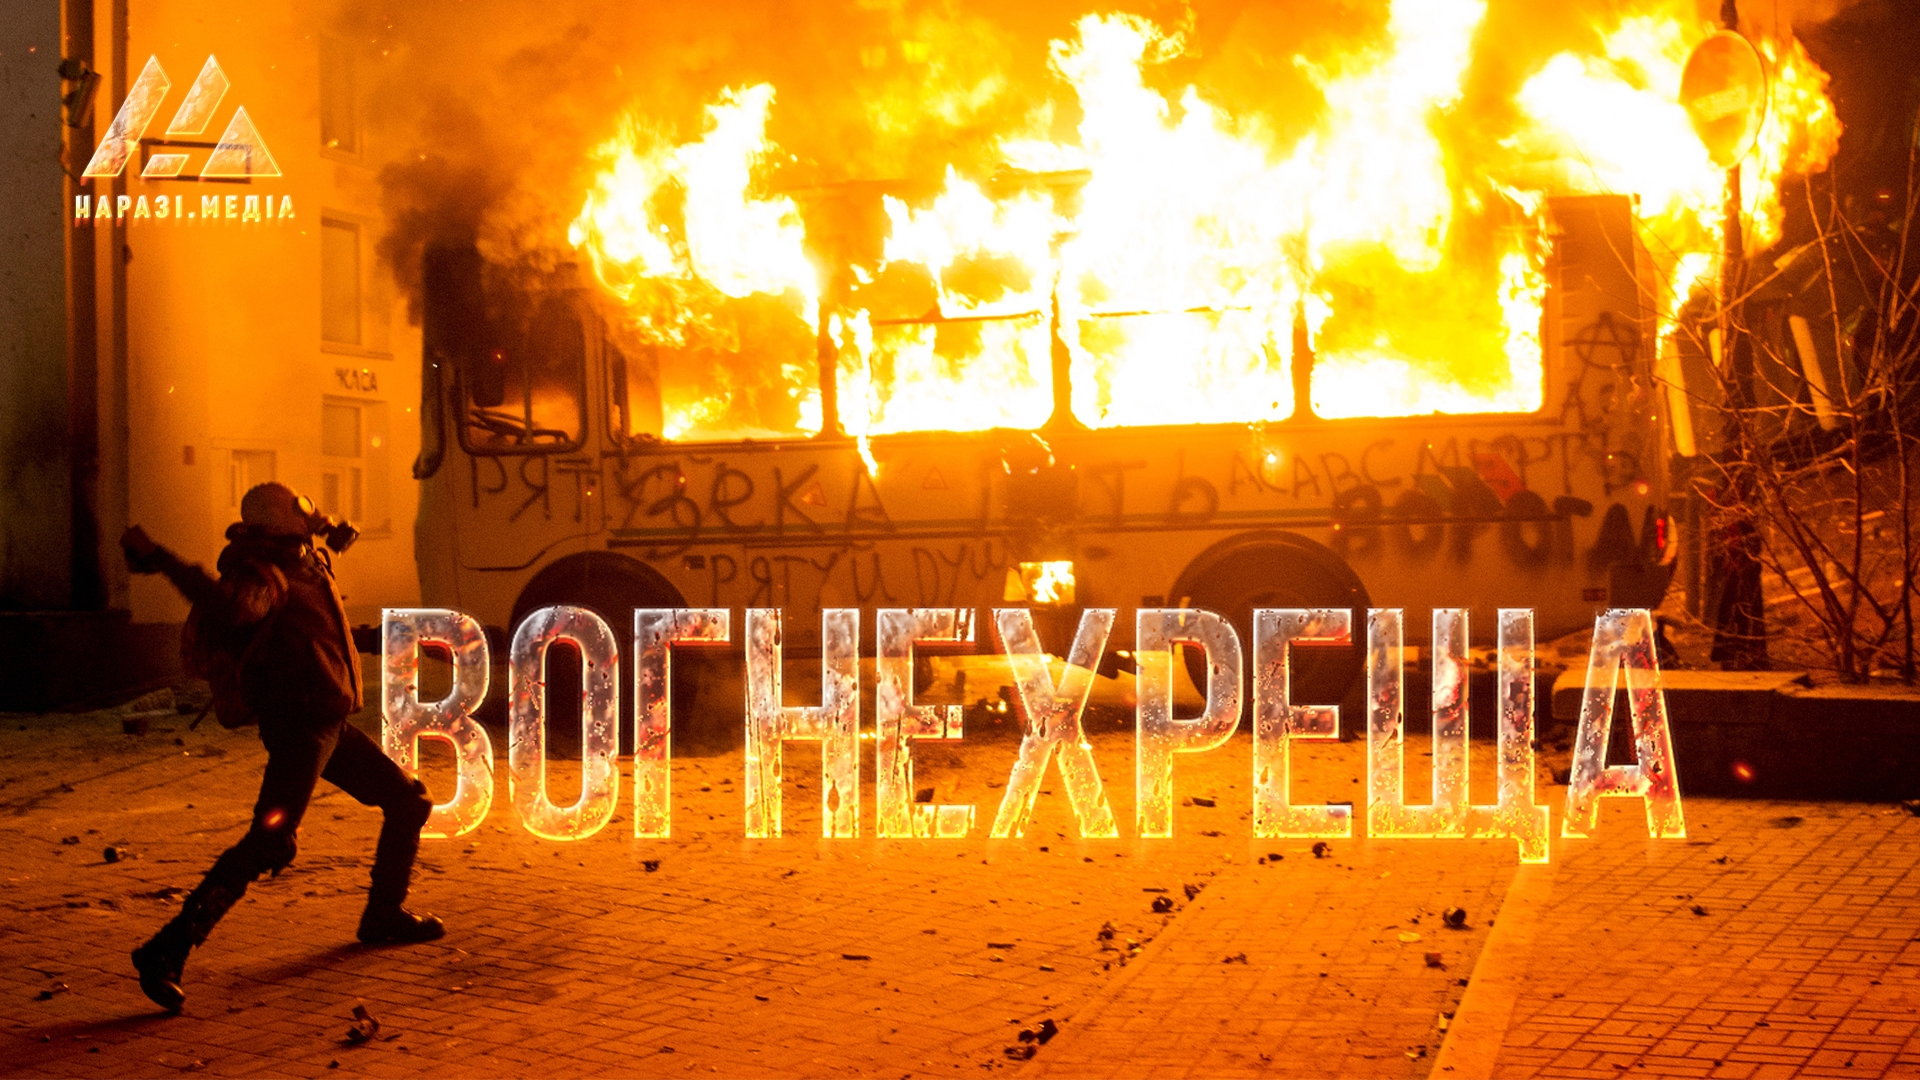 Вогнехреща: 7 років від початку протестів на Грушевського